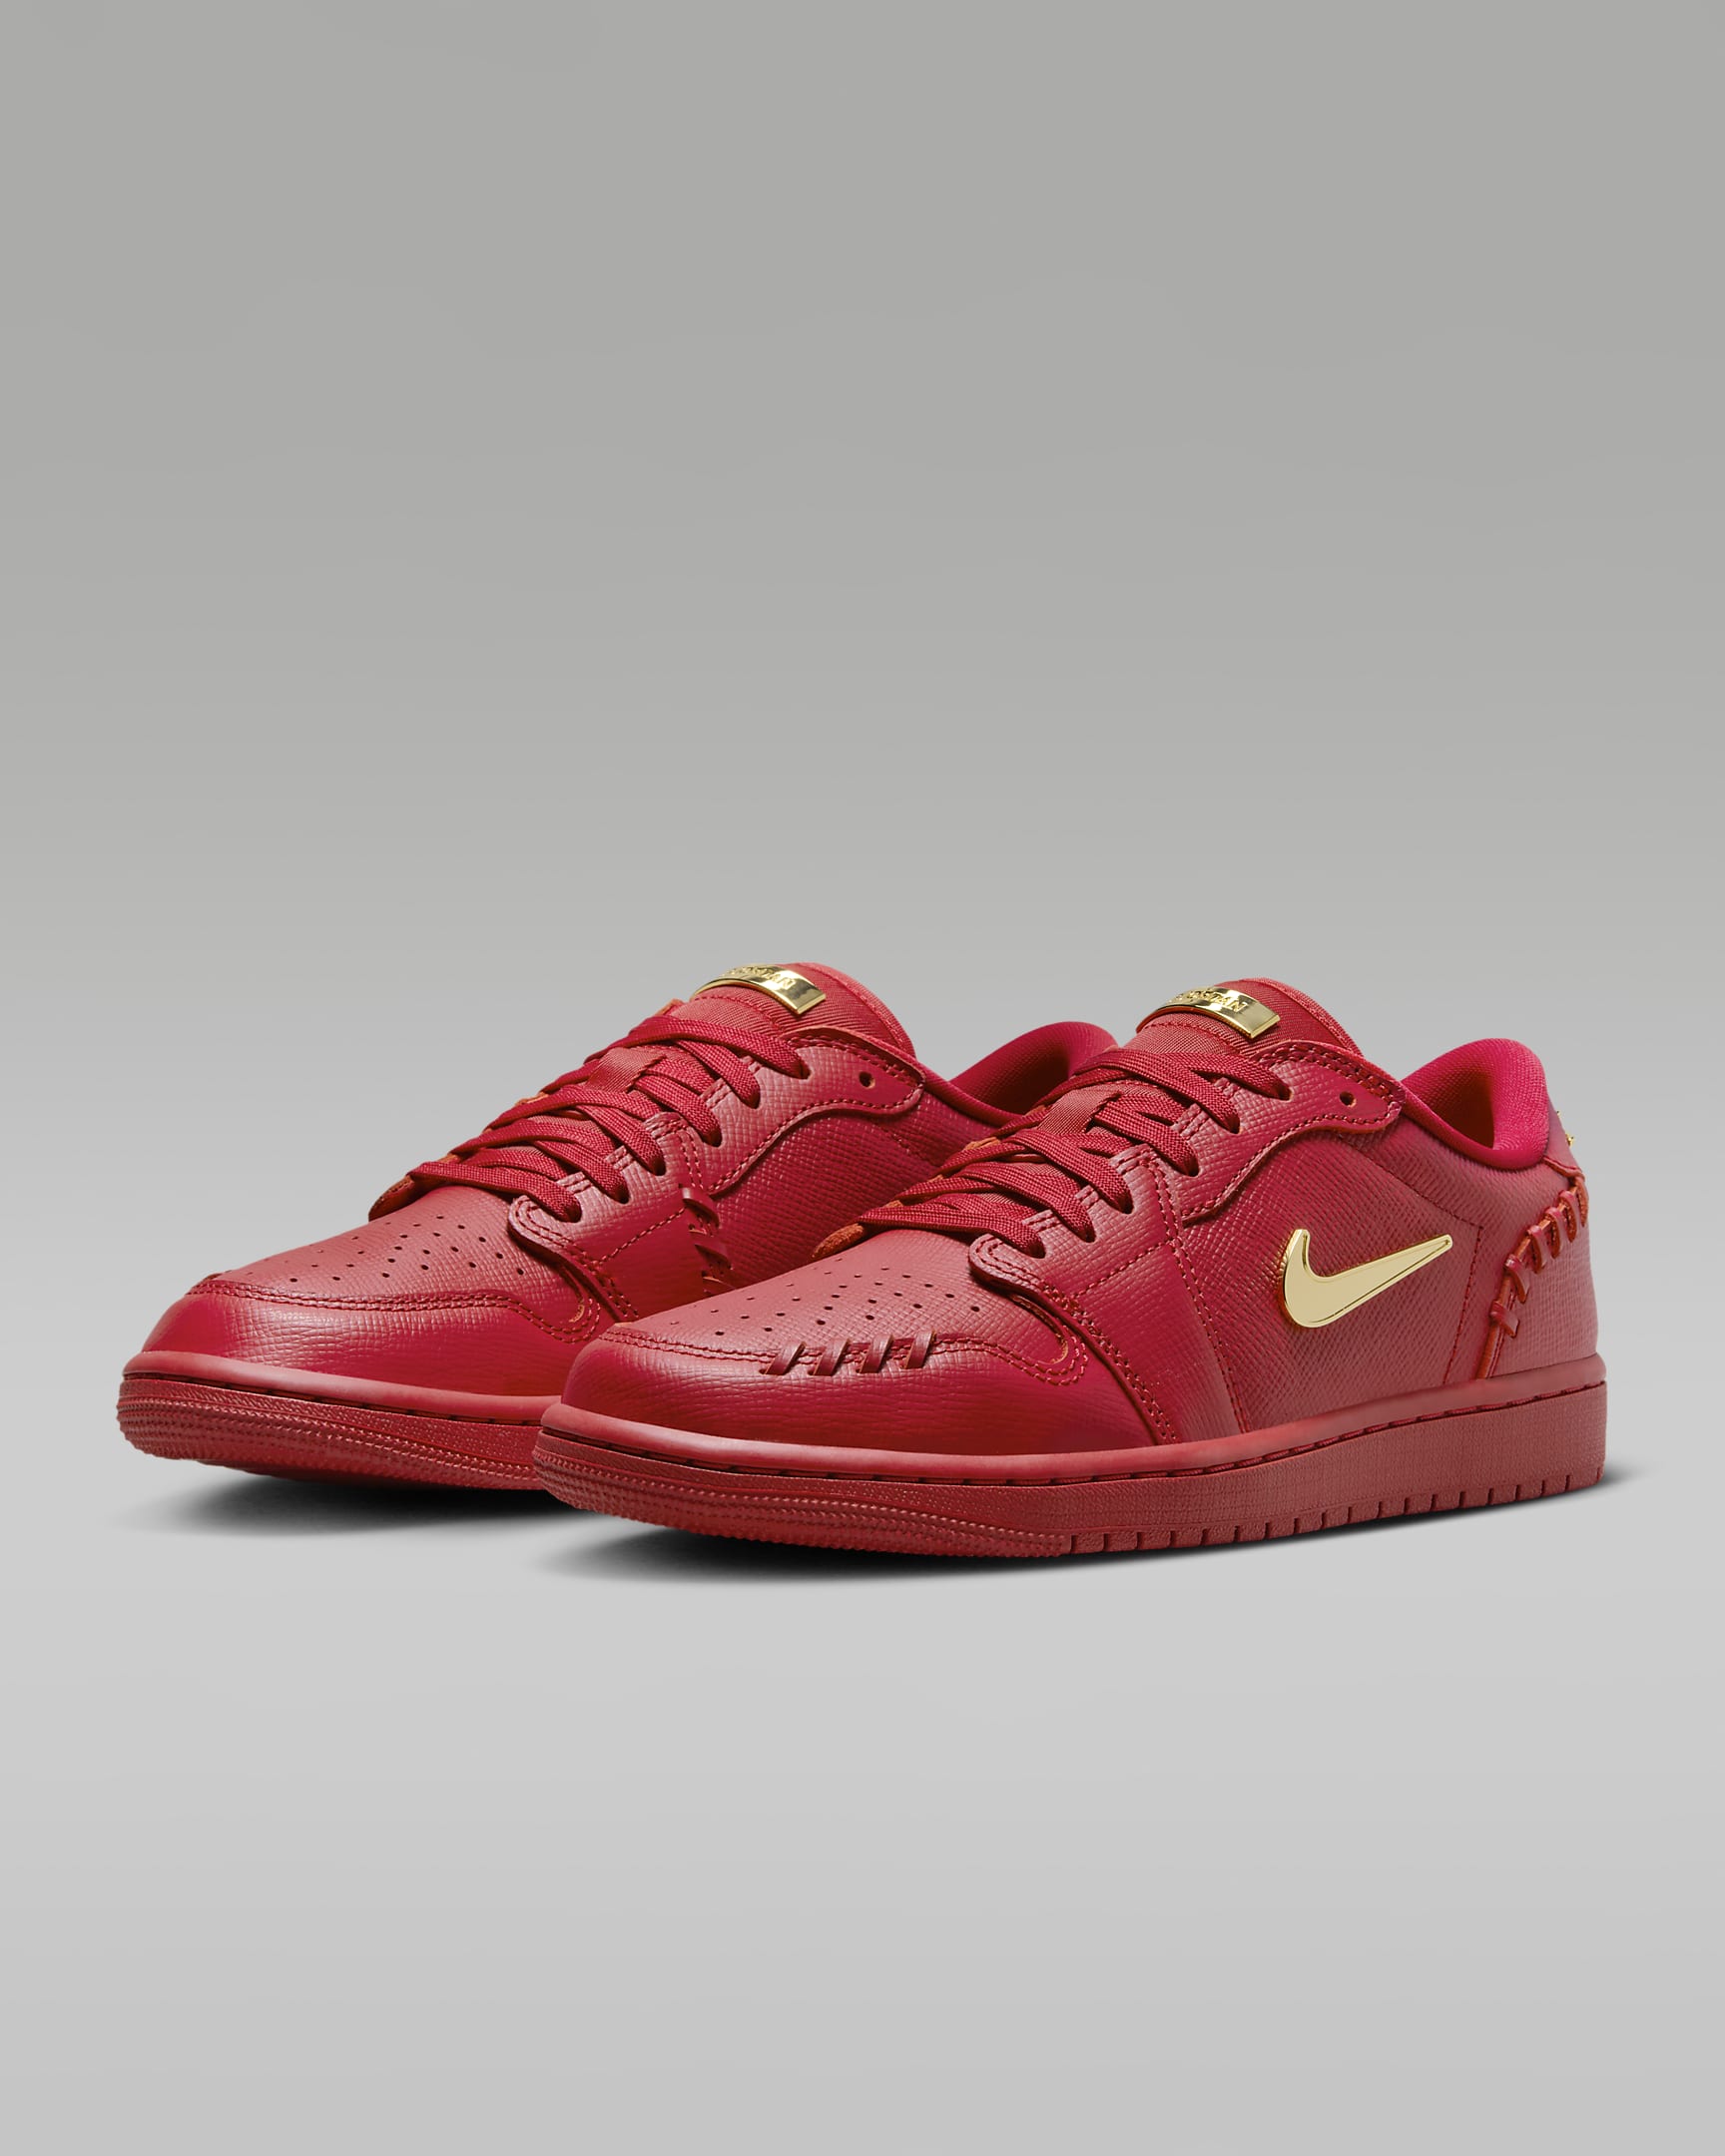 Air Jordan 1 Low Method of Make Women's Shoes - Gym Red/Metallic Gold